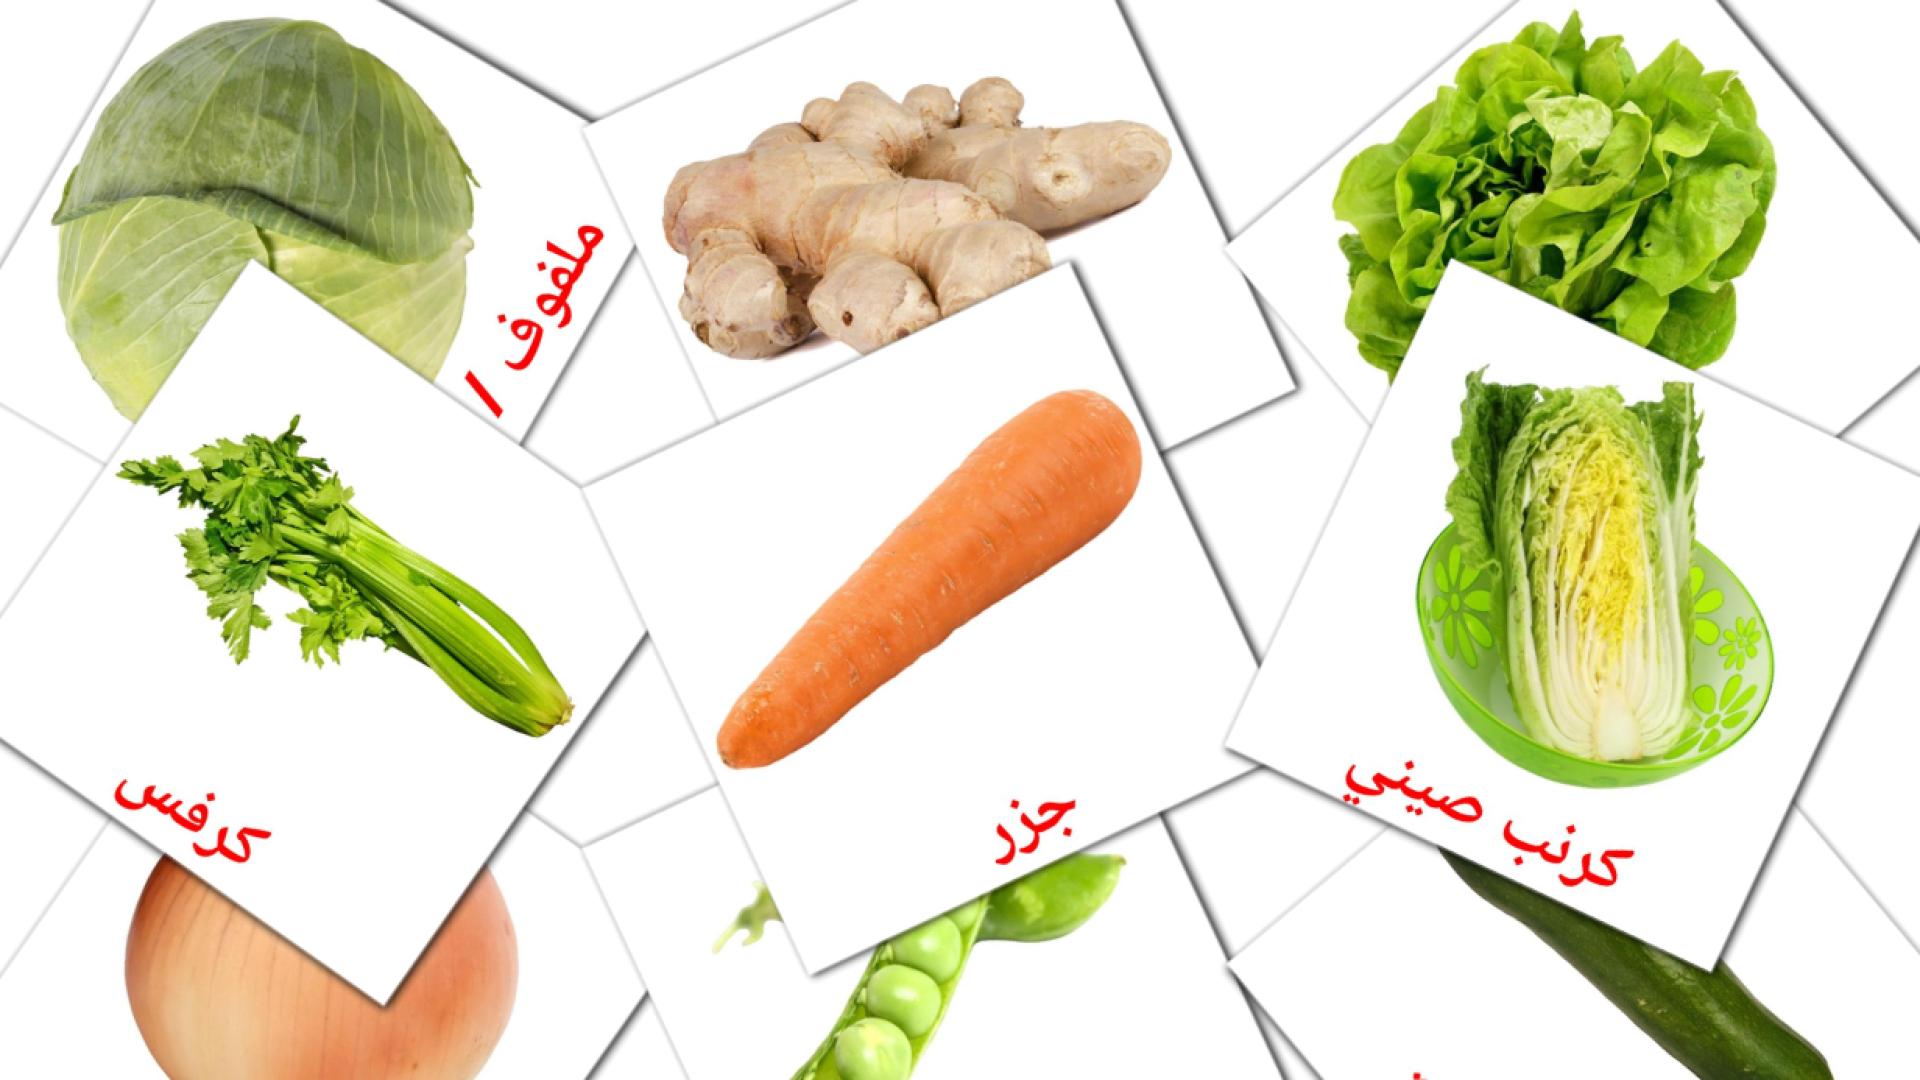 Gemüse - Arabisch Vokabelkarten